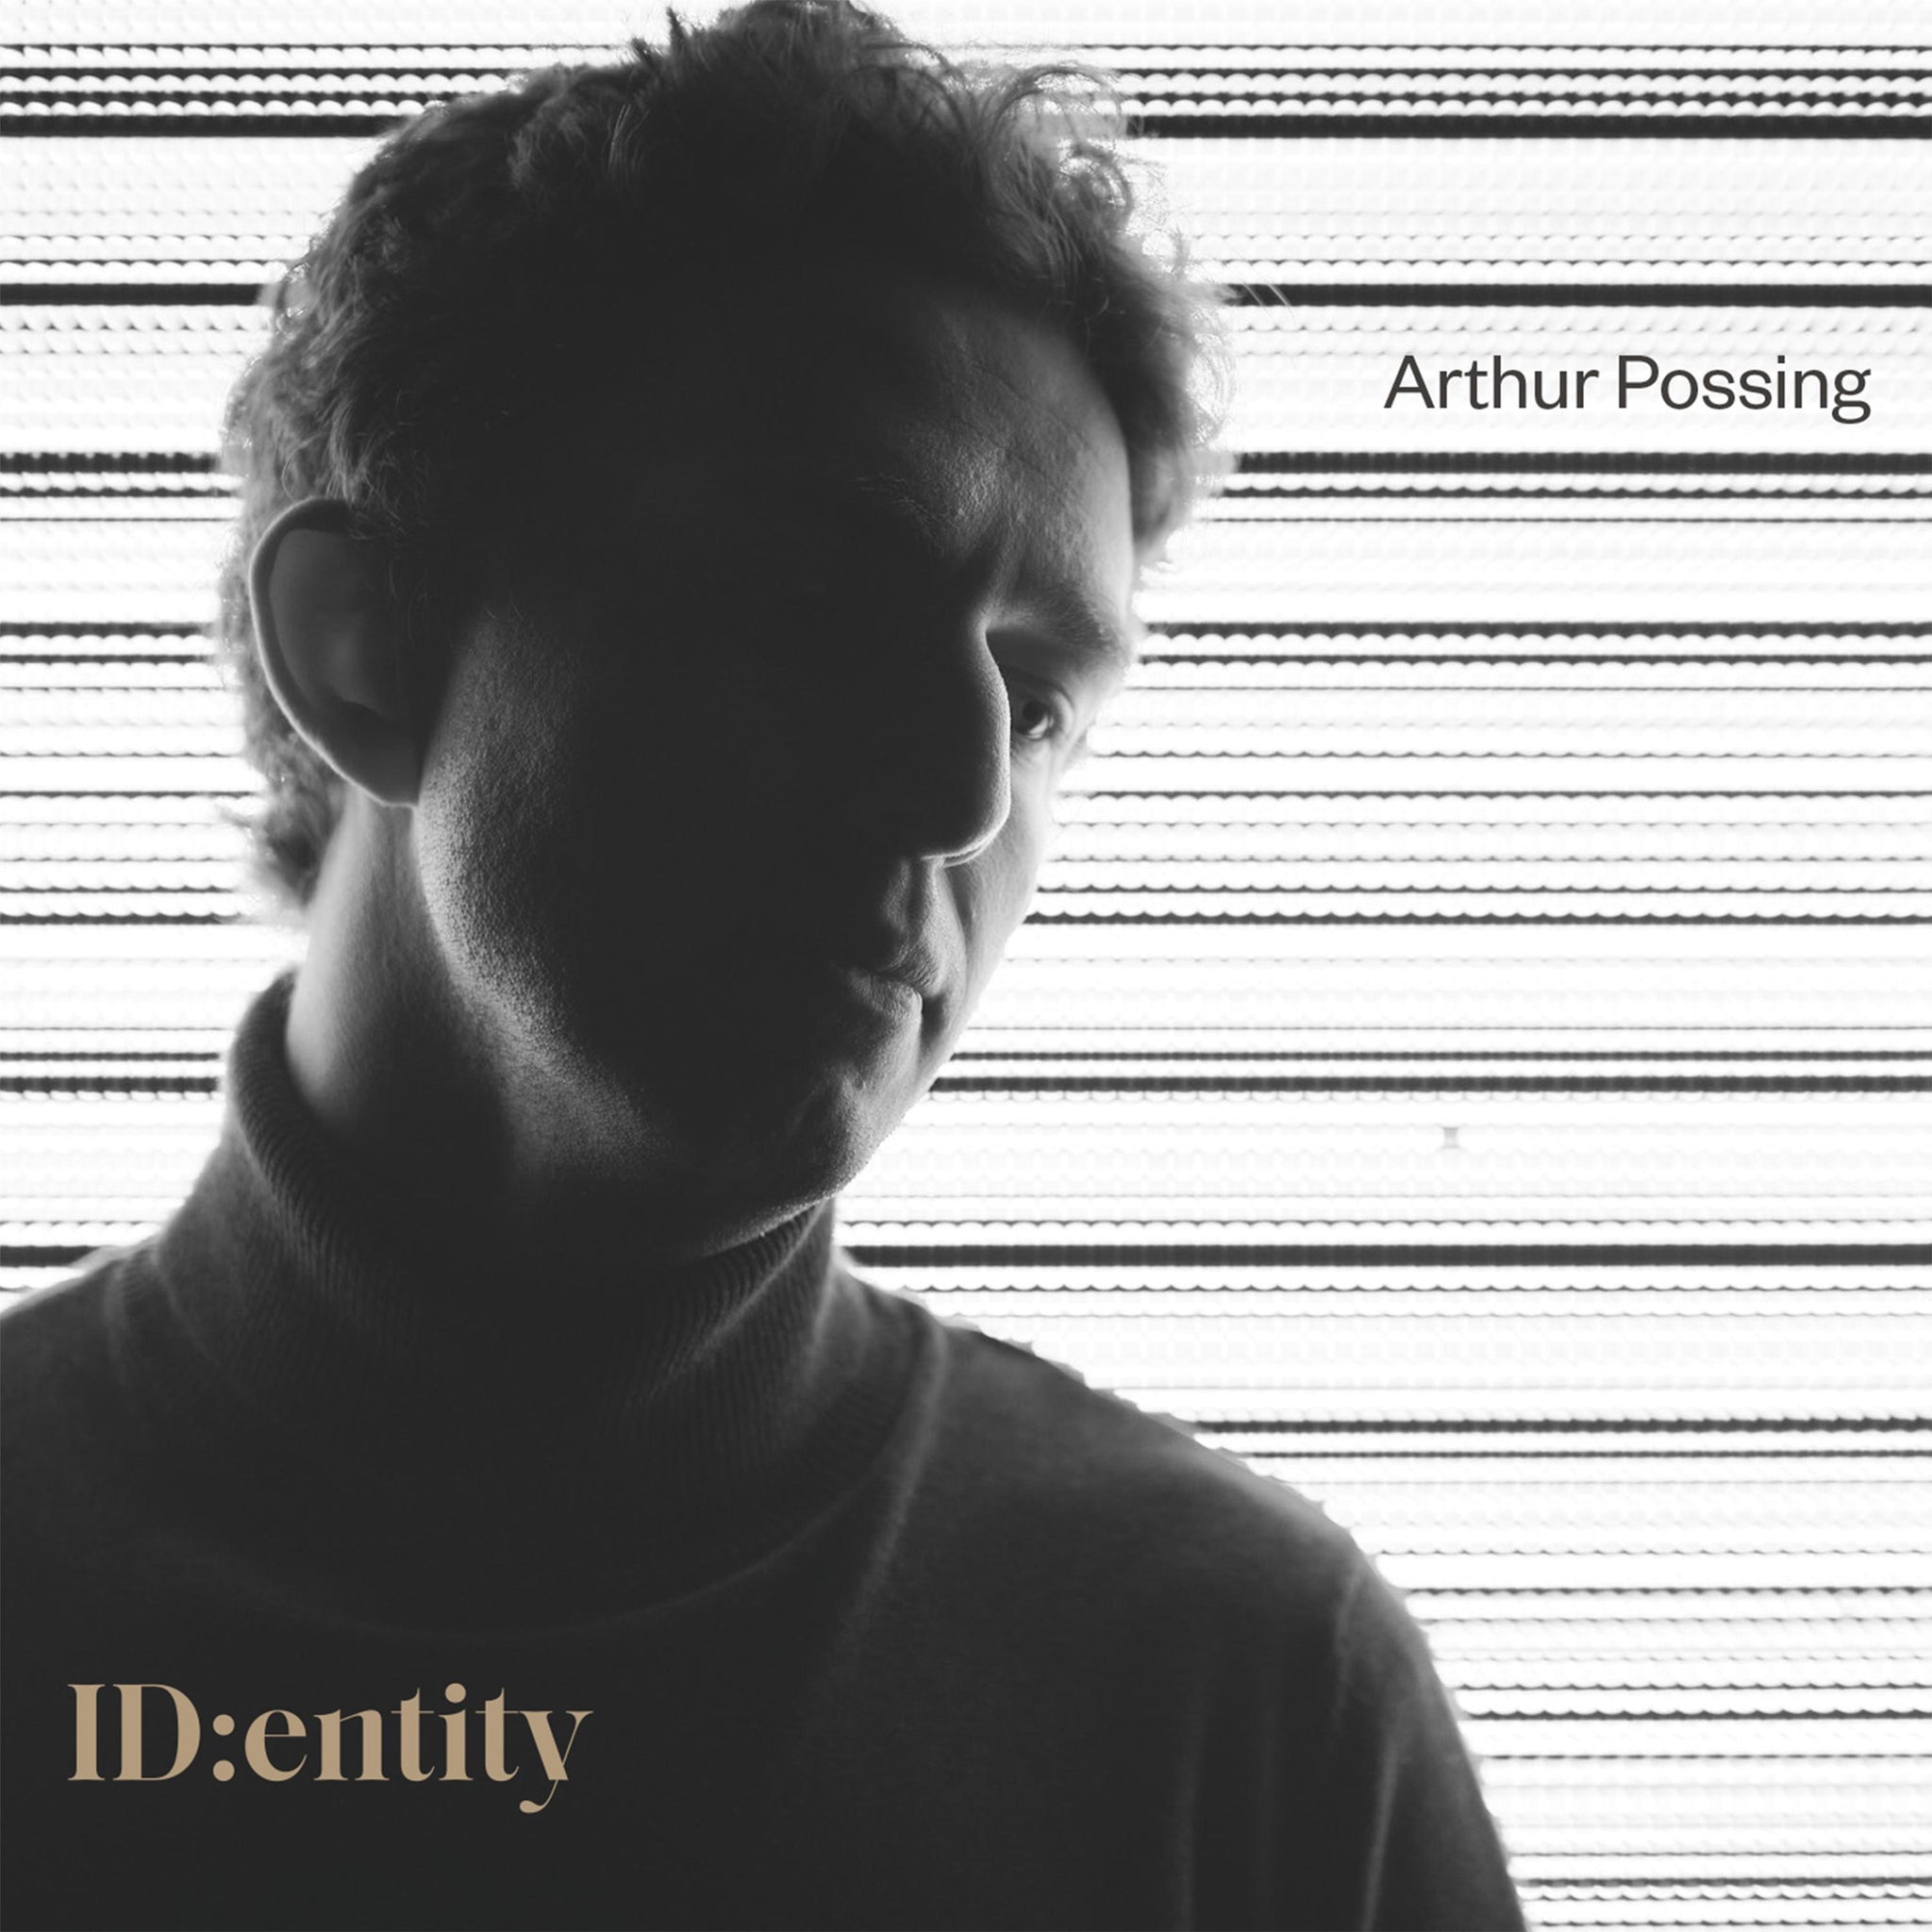 ID:entity / Arthur Possing